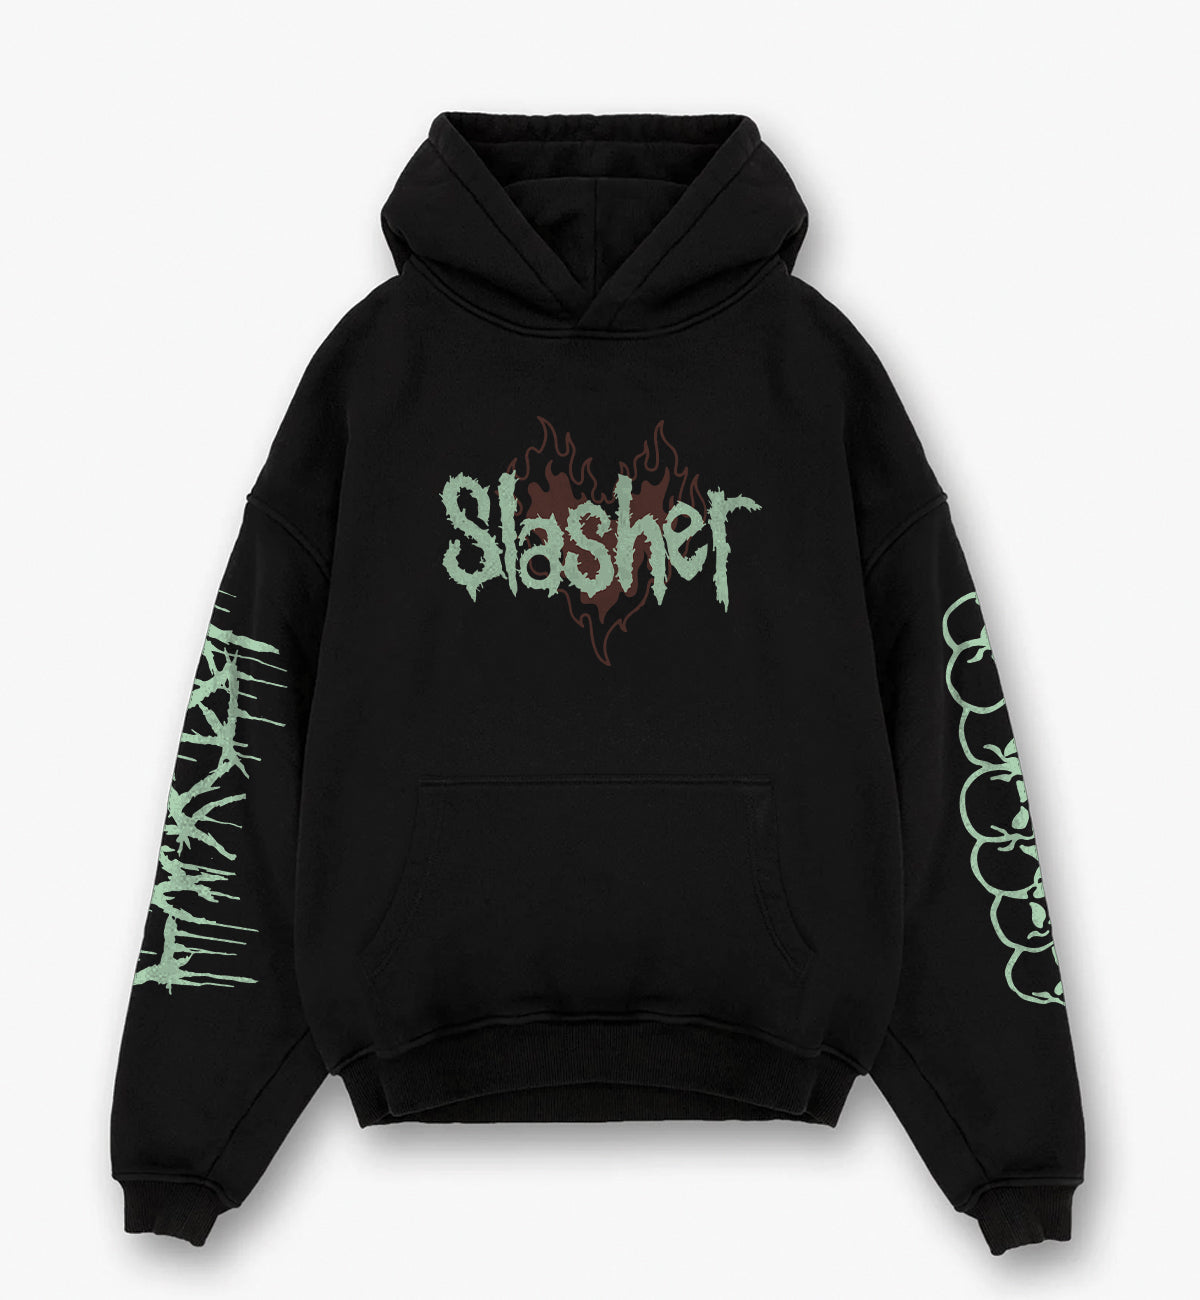 Slasher Designed Oversized Hoodie